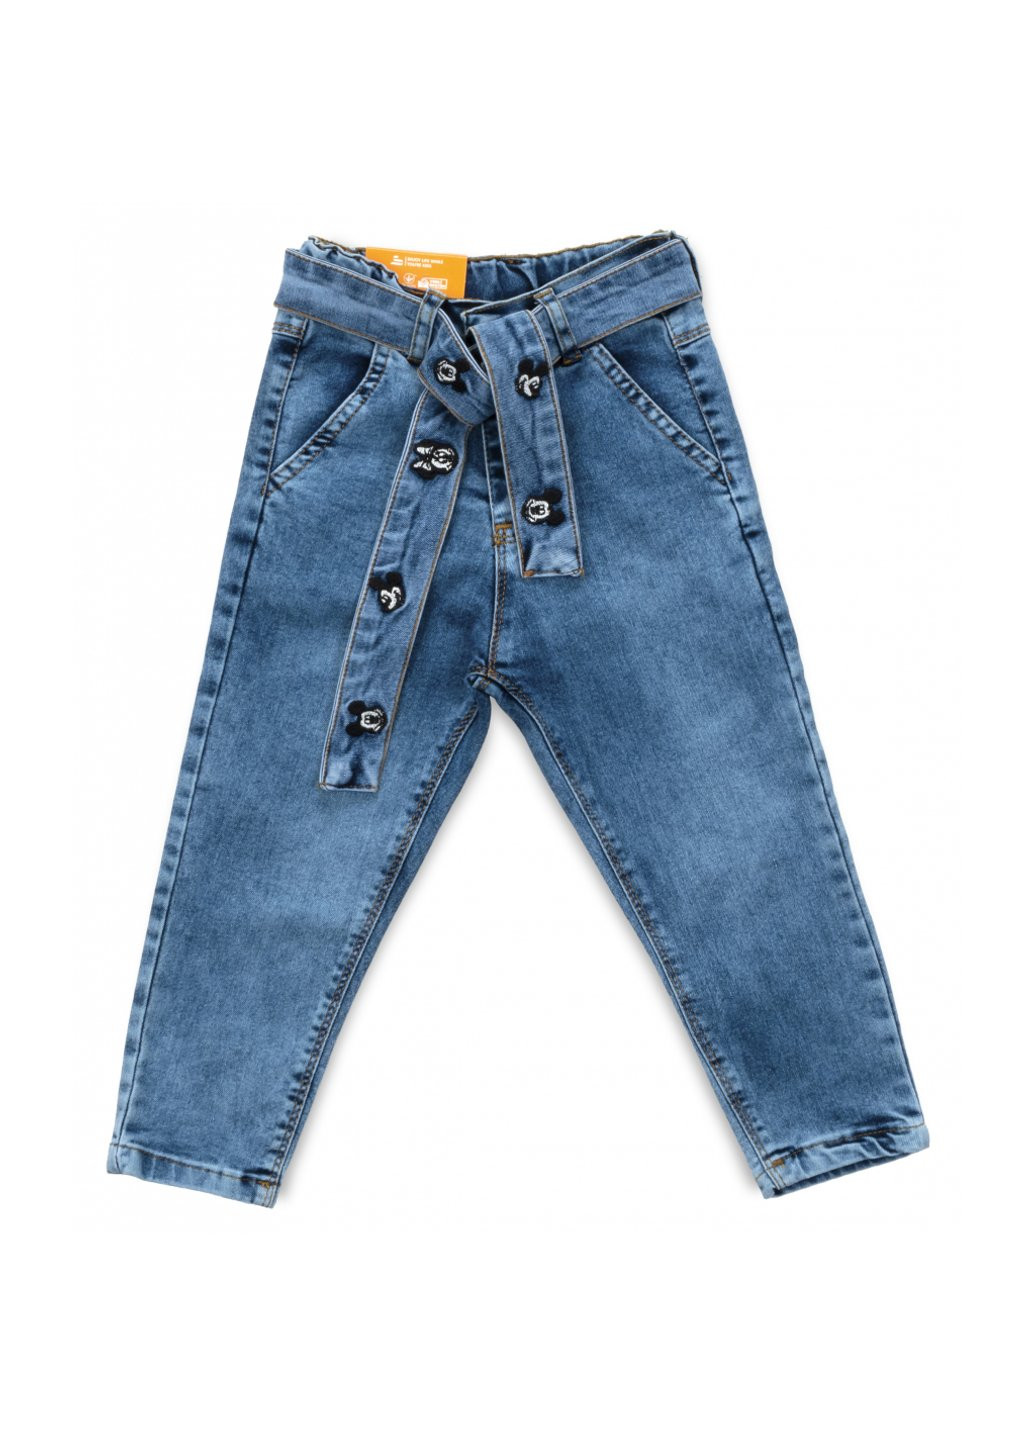 Голубые демисезонные джинсы с поясом (58162-110g-blue) Sercino